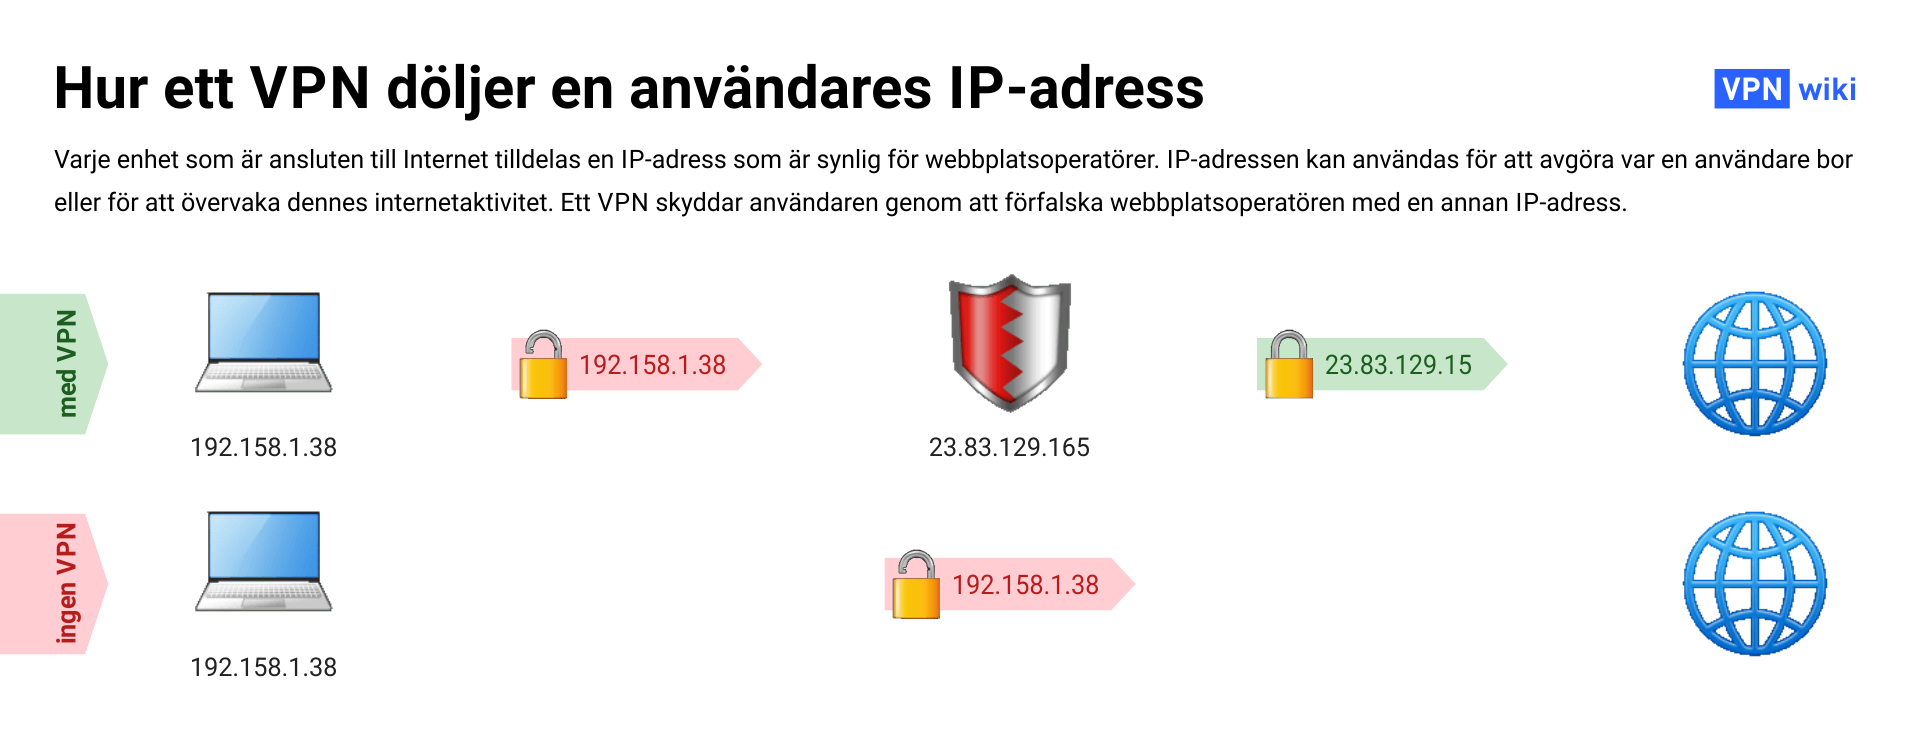 Vad är ett VPN och hur fungerar det? 4 exempel pa användning